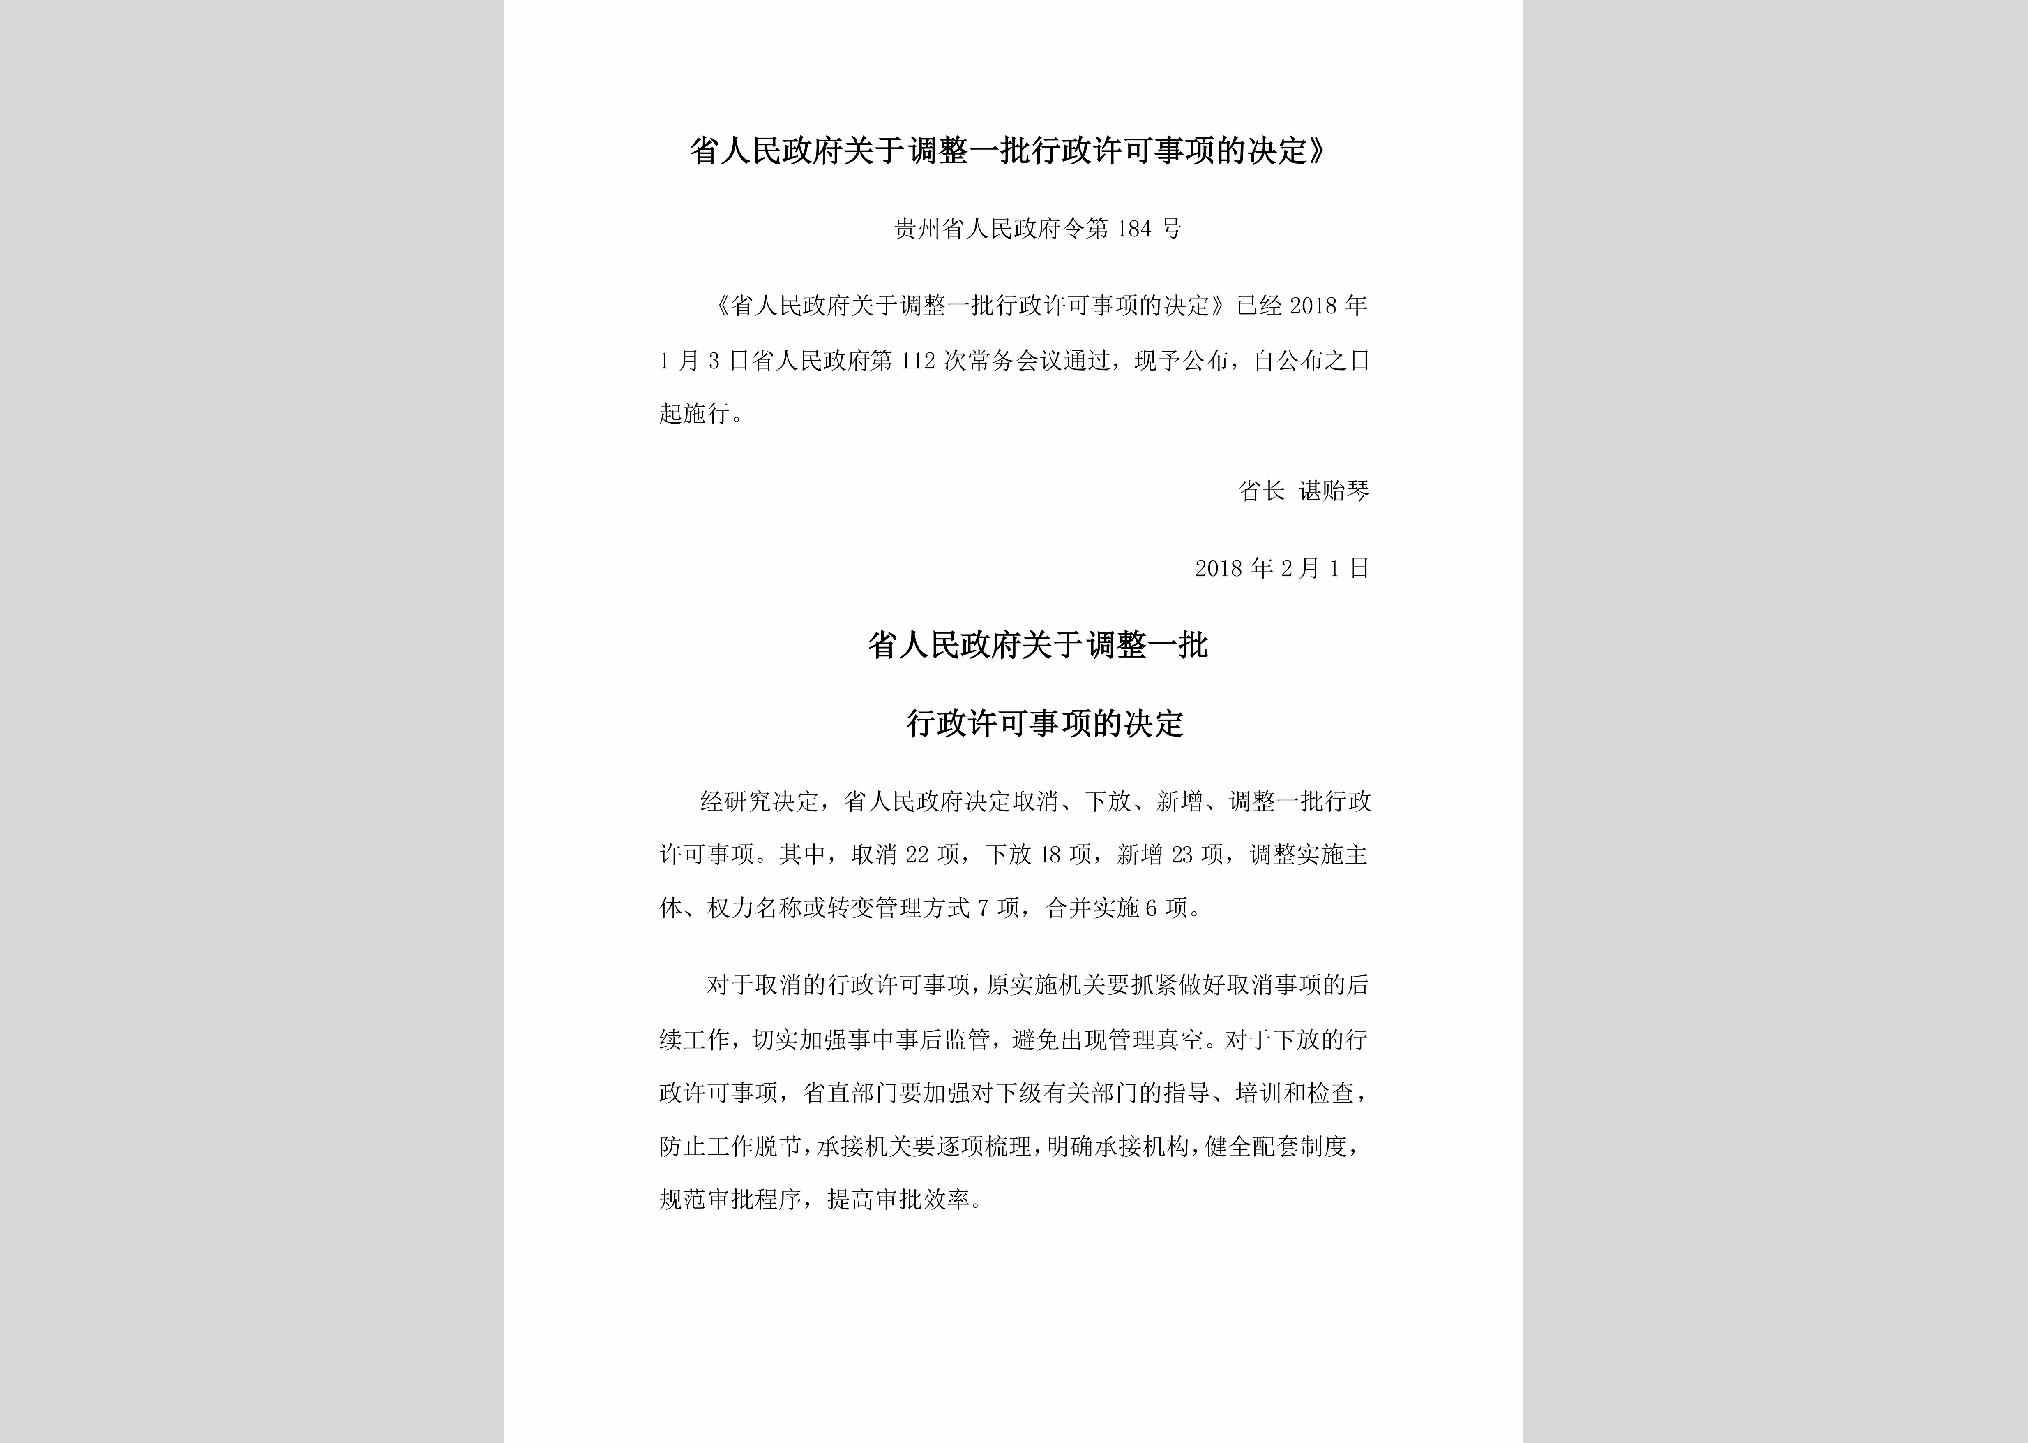 贵州省人民政府令第184号：《省人民政府关于调整一批行政许可事项的决定》